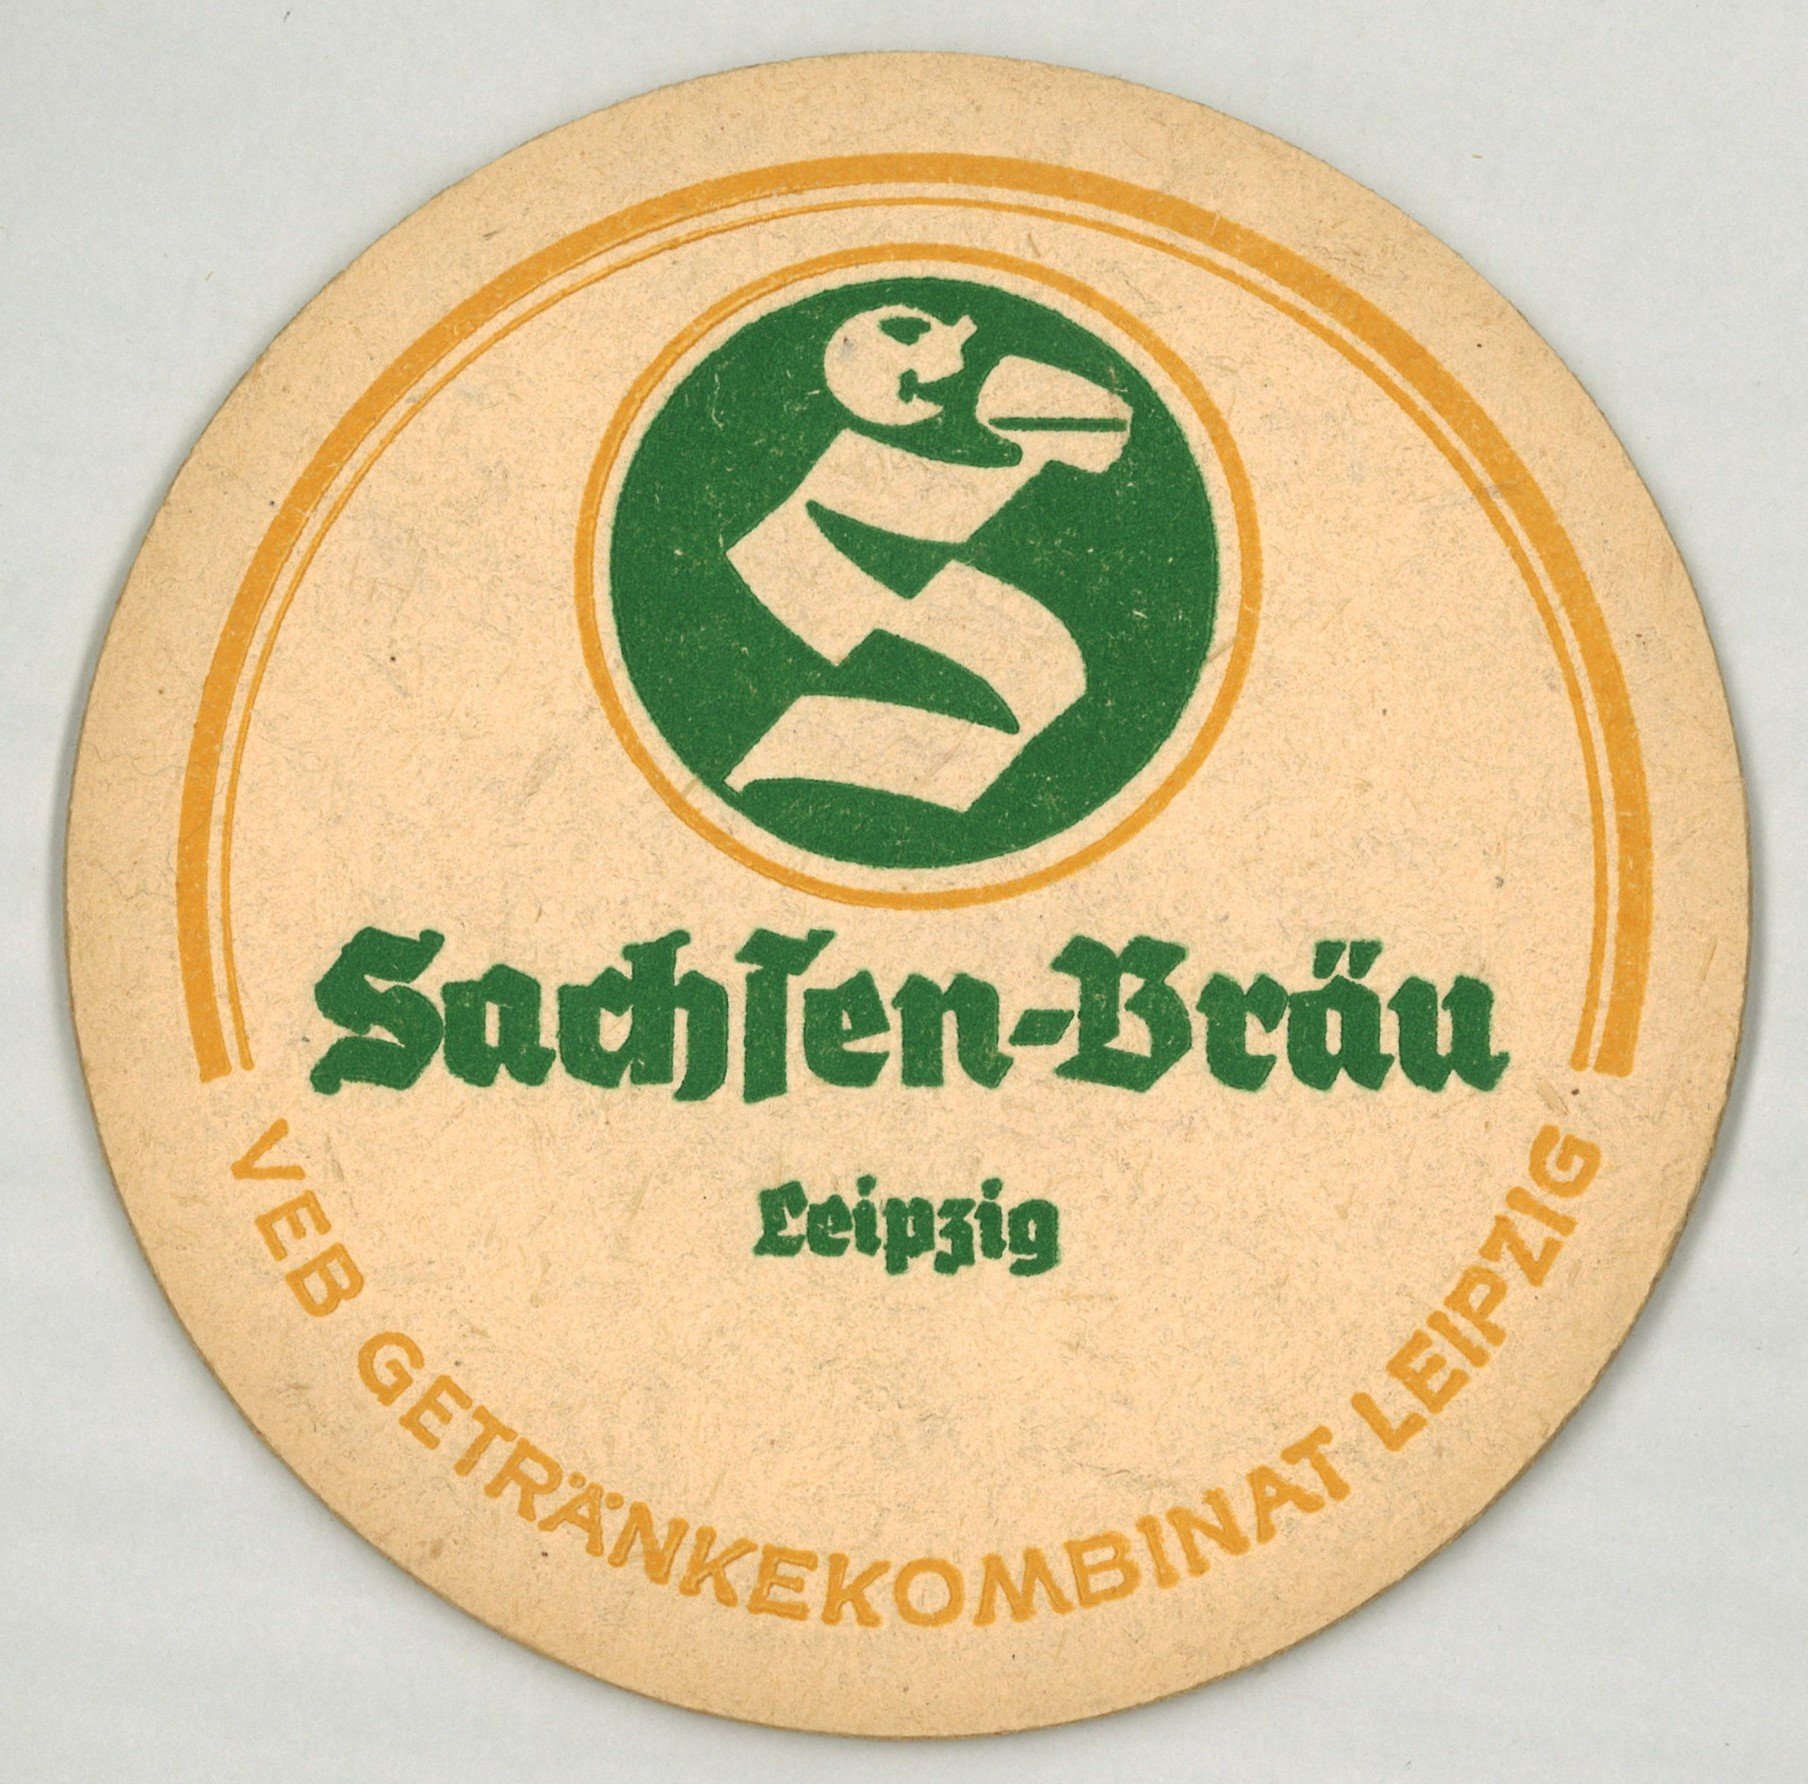 Leipzig: Sachsen-Bräu / VEB Getränkekombinat Leipzig (Landesgeschichtliche Vereinigung für die Mark Brandenburg e.V., Archiv CC BY)